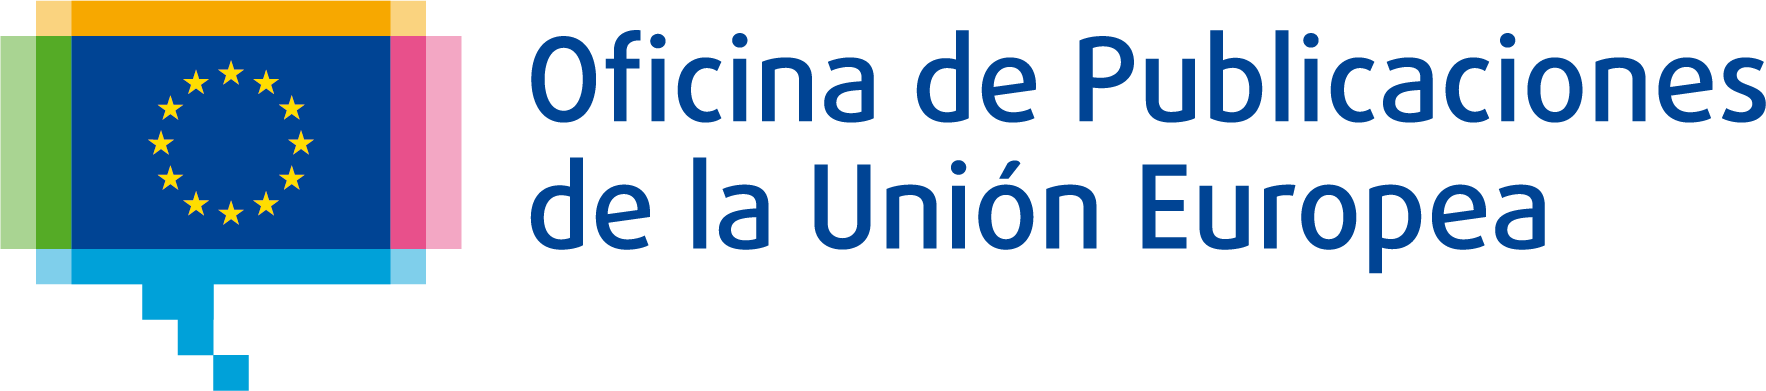 Oficina de Publicaciones de la Unión Europea